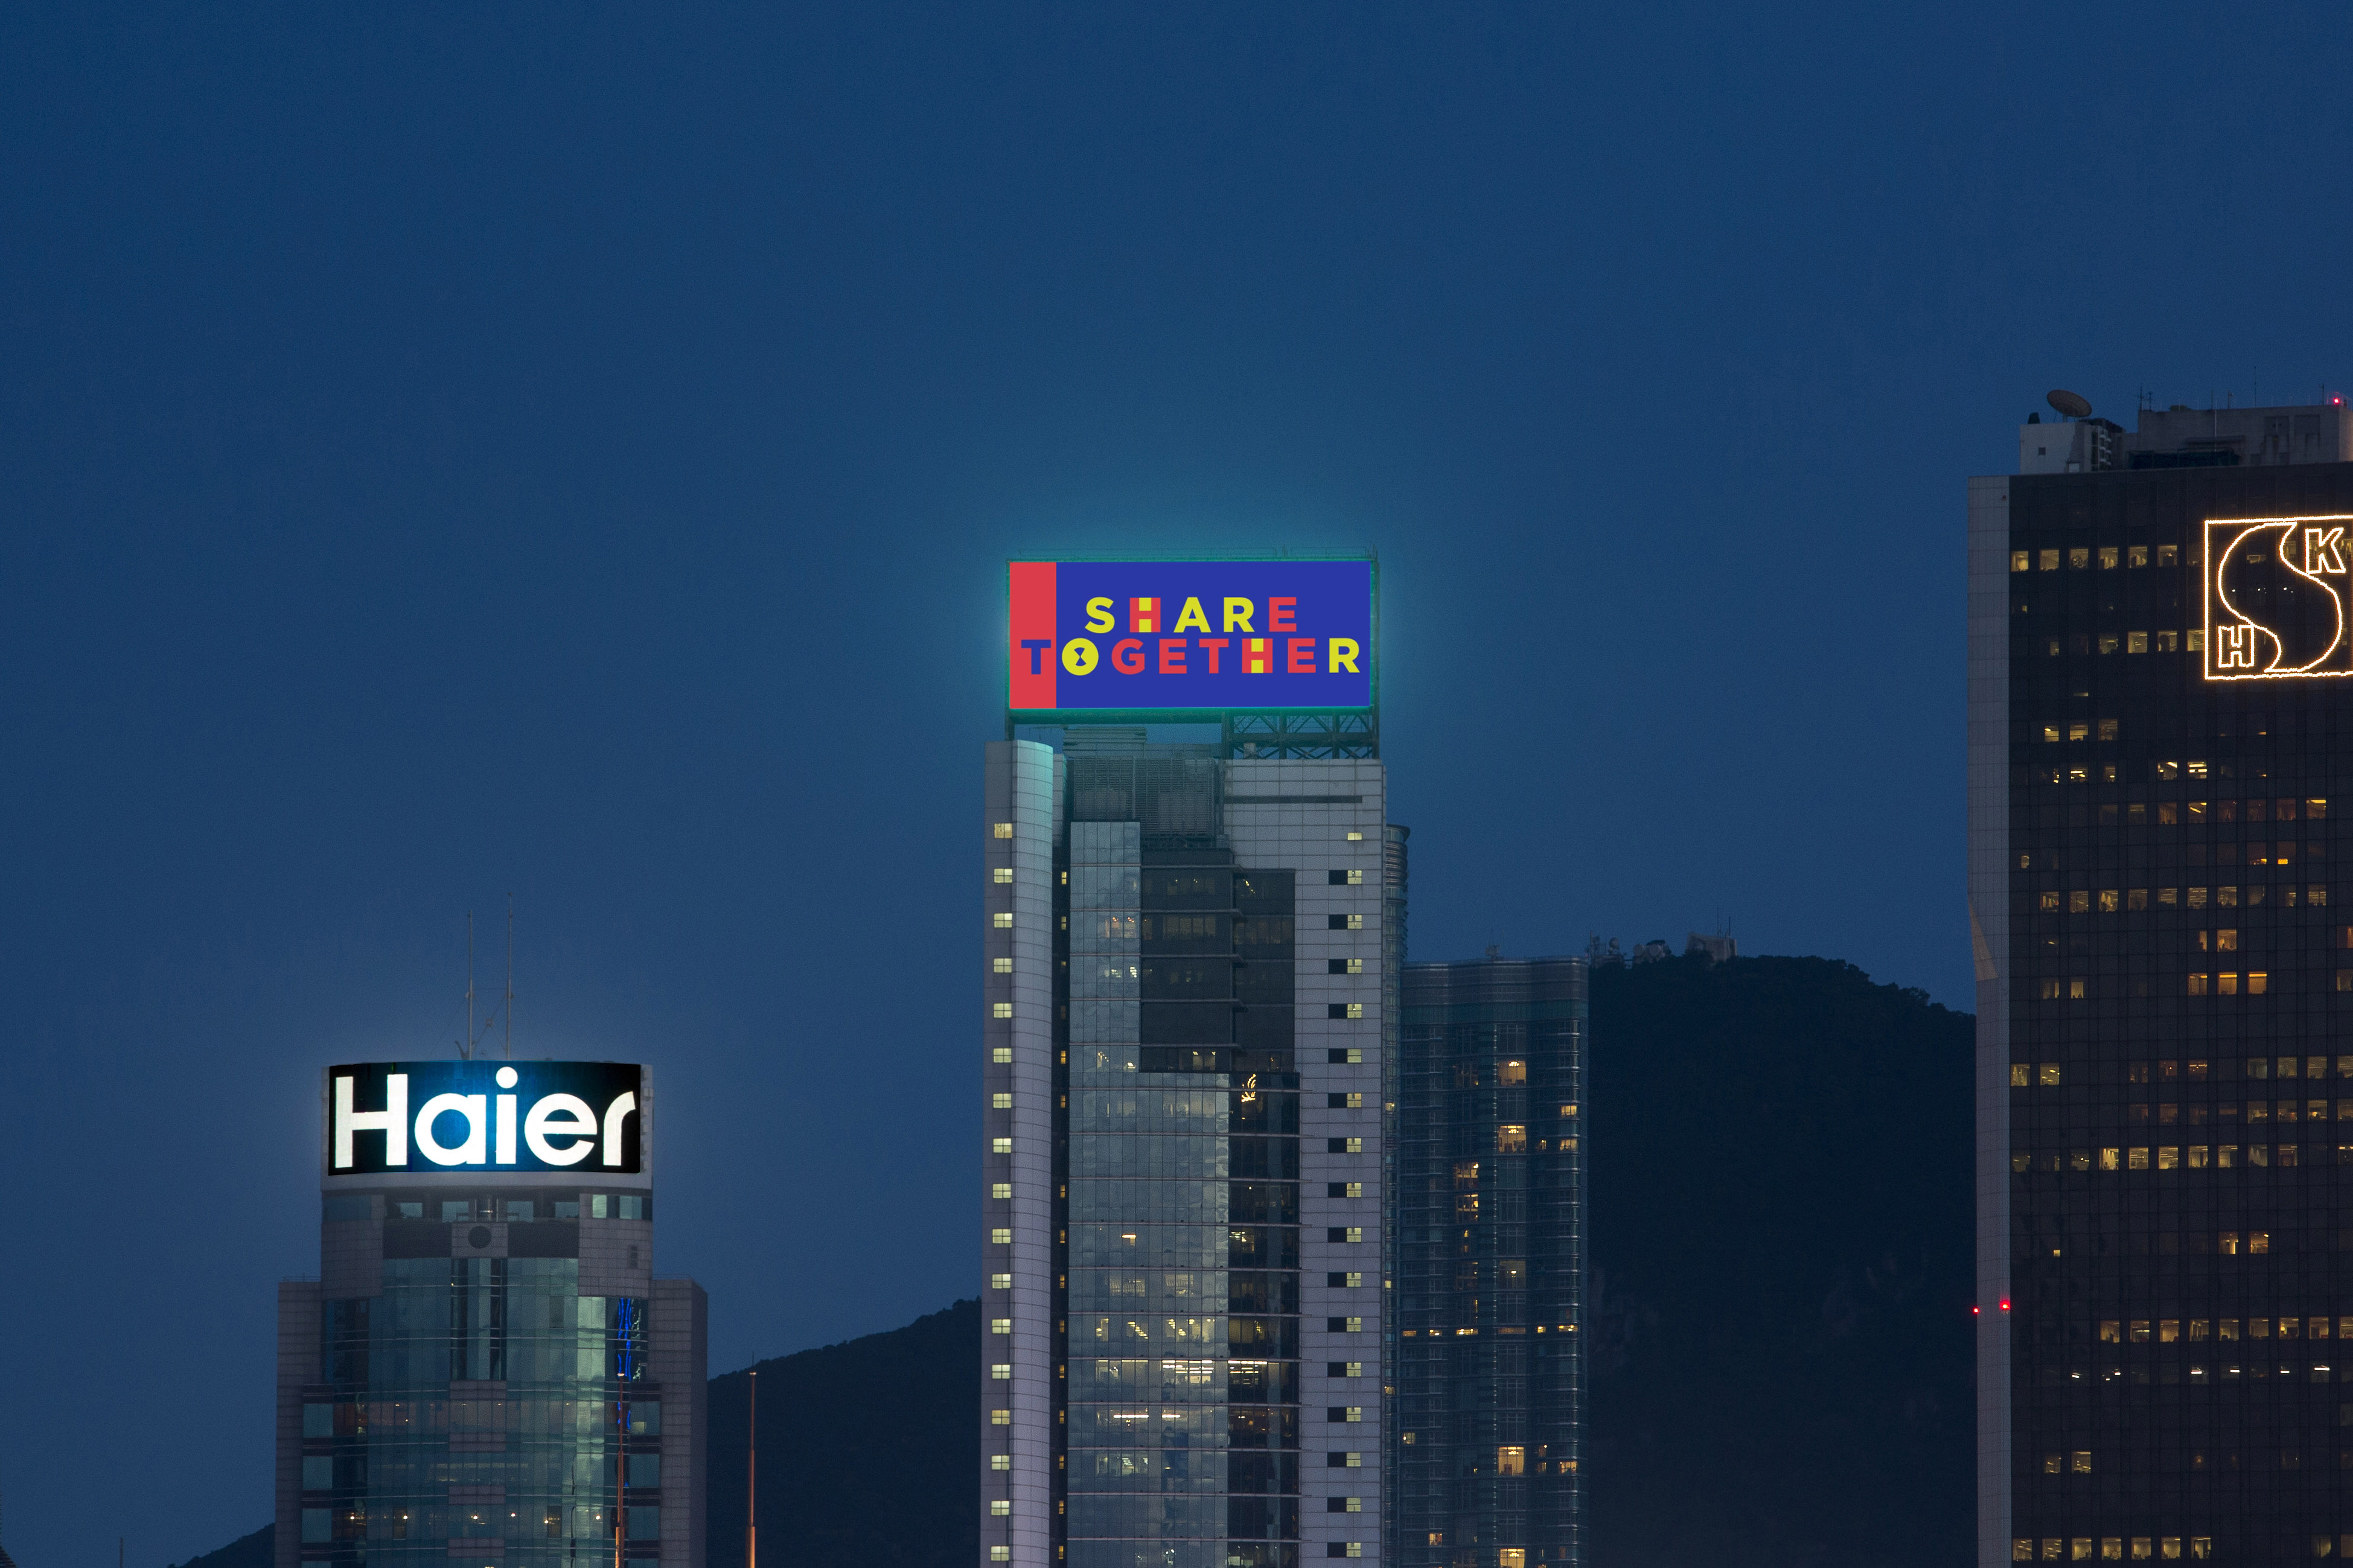 中國人壽(海外)參加新版「幻彩詠香江」匯演，與維港兩岸40多幢大廈共同播放燈光效果，展示維港充滿動感一面